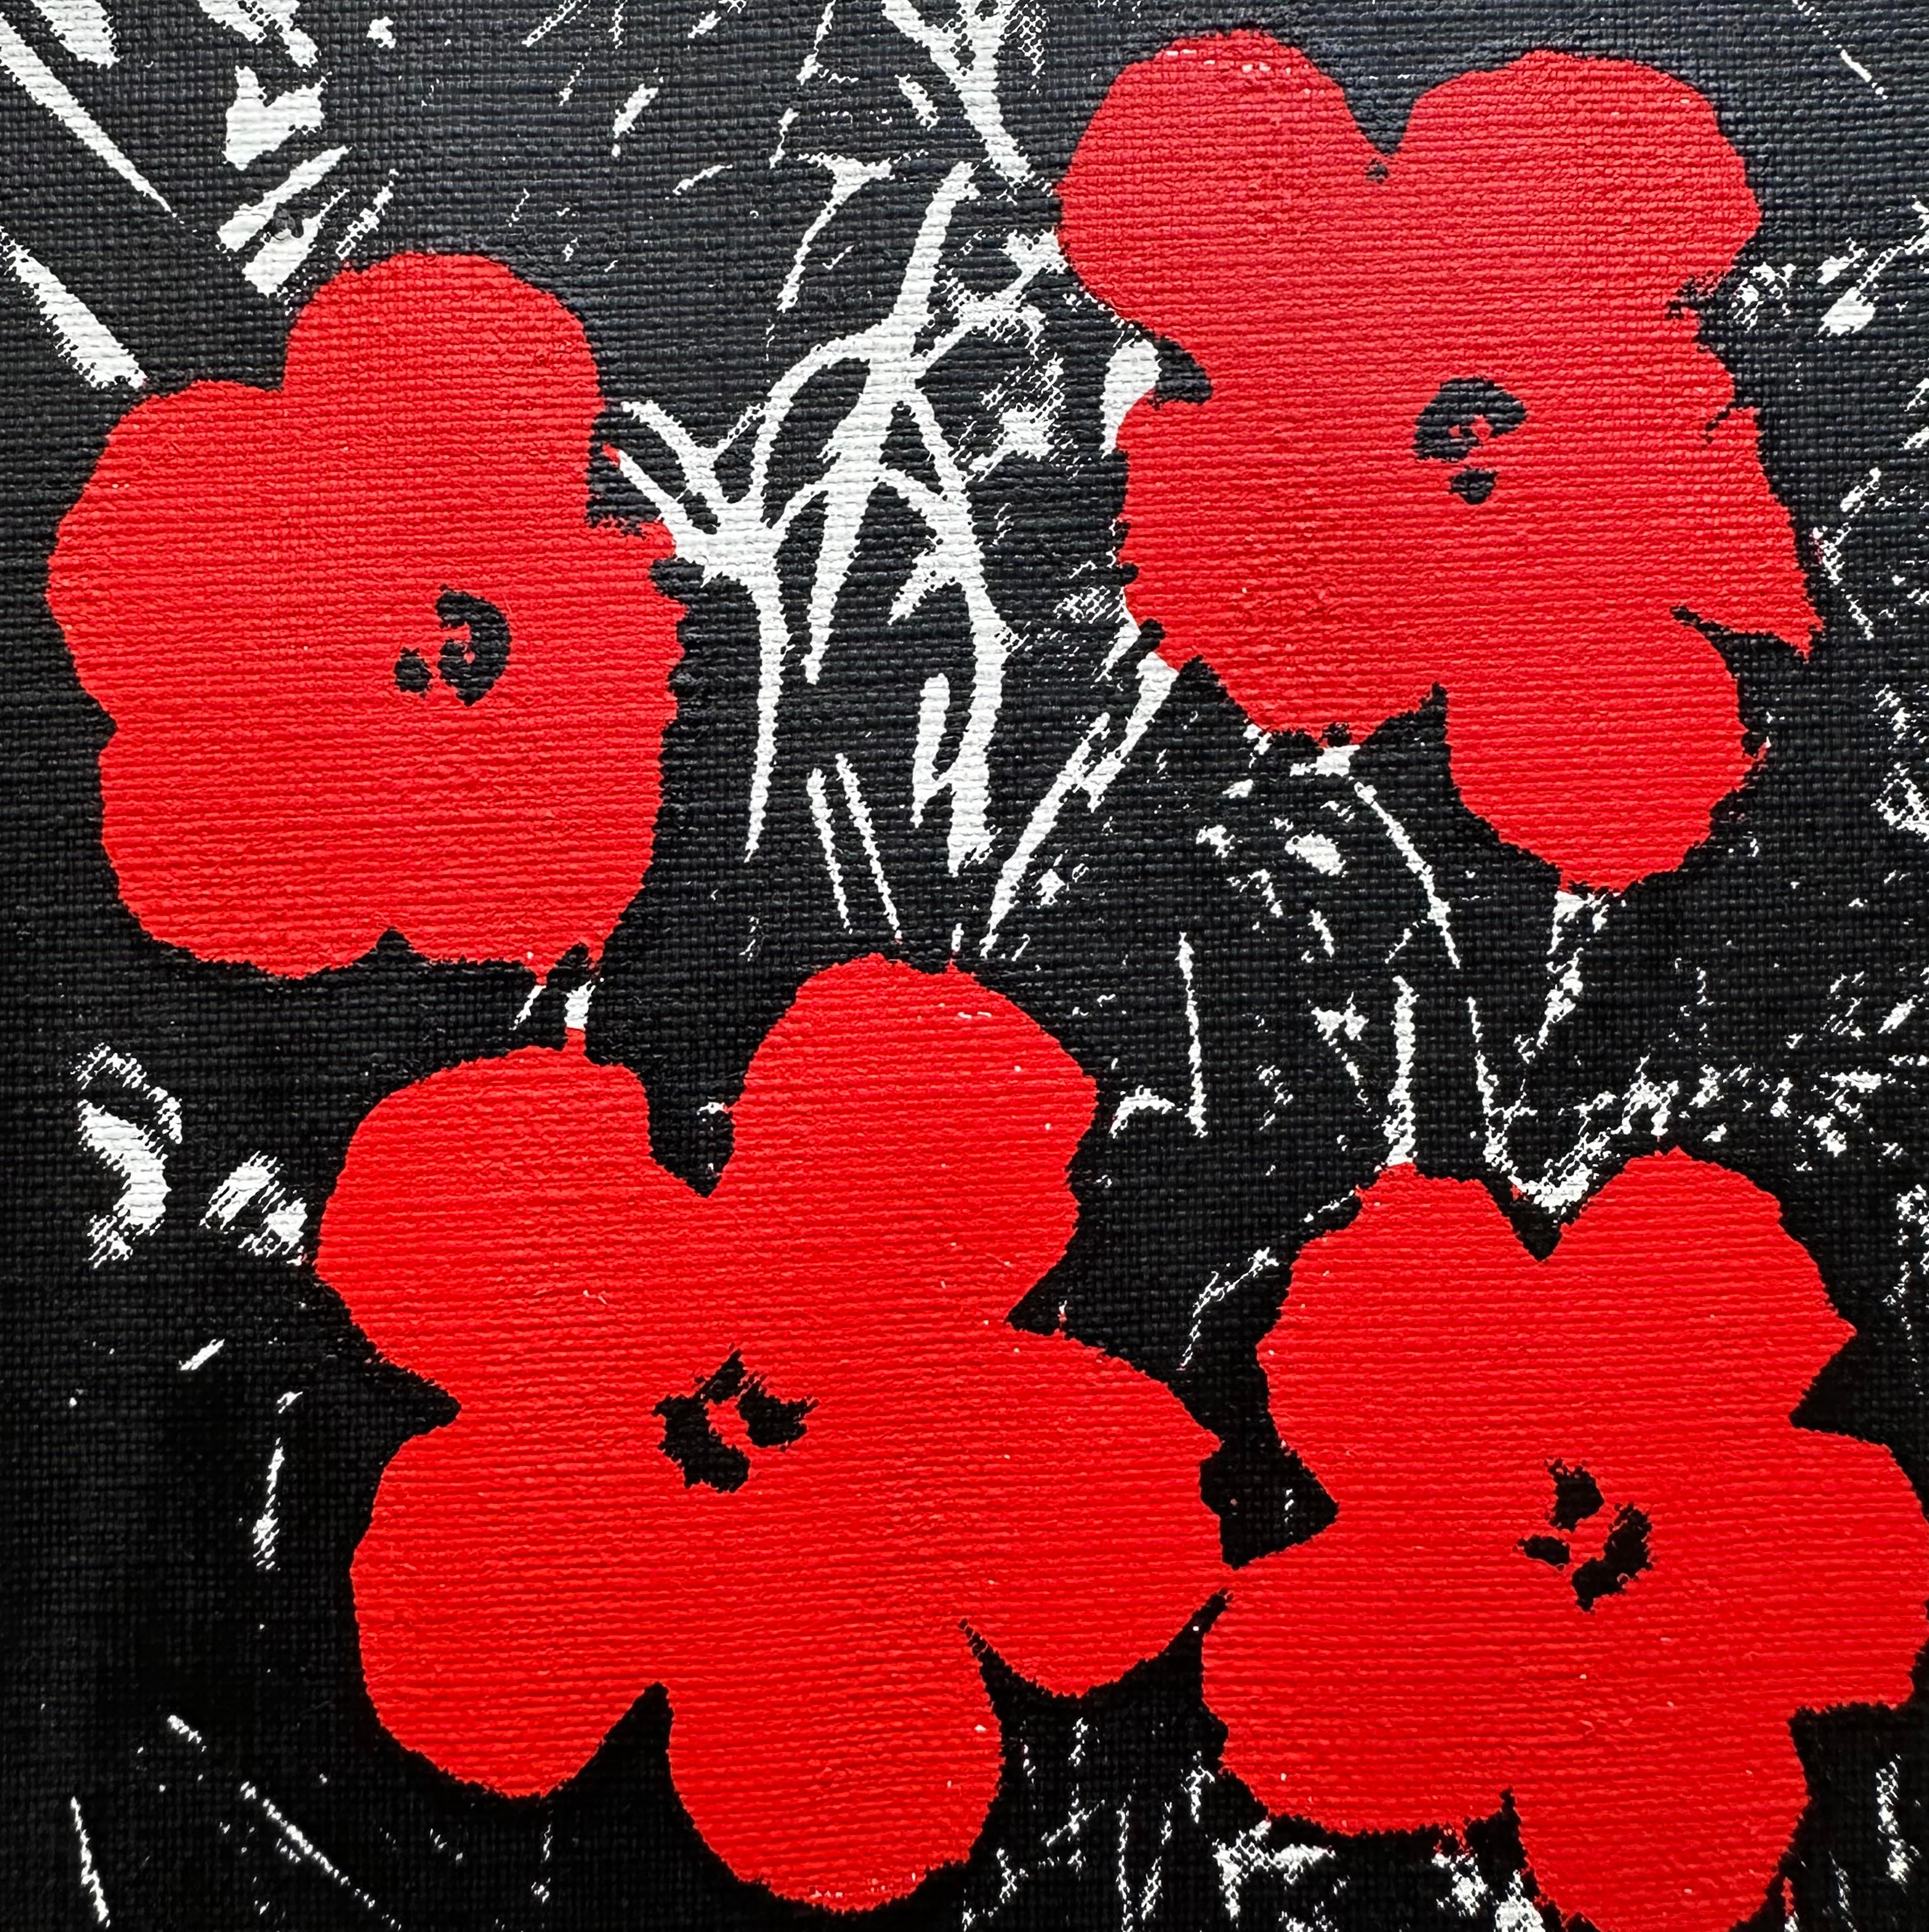 Denied Warhol Flowers, (Red) Sérigraphie de Charles Lutz
Sérigraphie et acrylique sur toile avec le cachet Denied du Andy Warhol Art Authentication Board.
5 x 5" pouces
2008

En 2007, la série "Warhol Denied" de Gaines a attiré l'attention